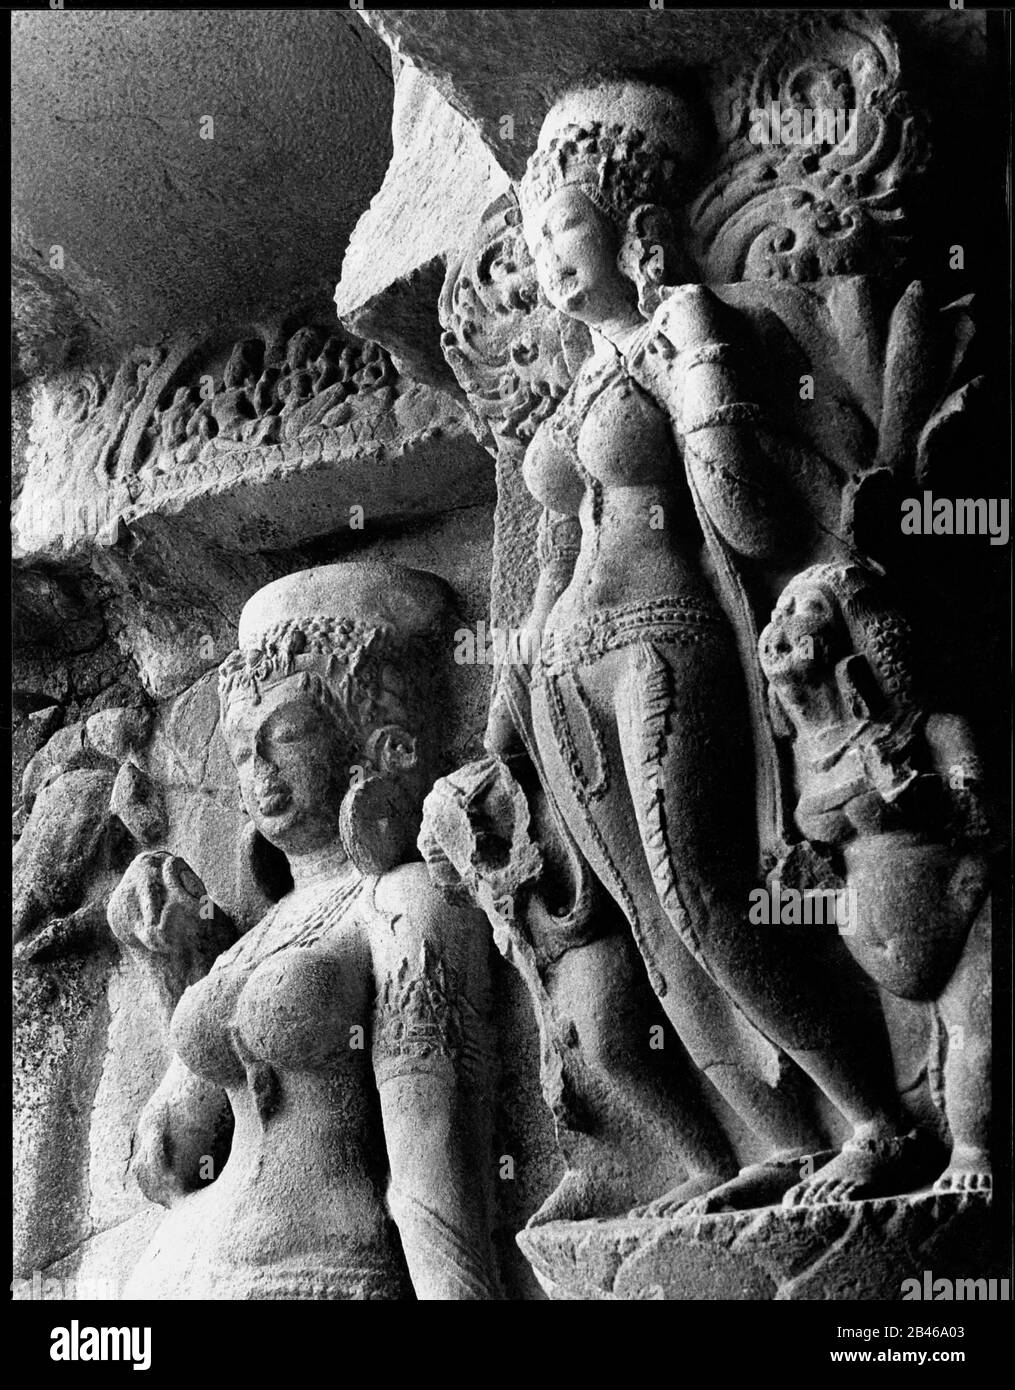 Ganga e Yamuna, la grotta di Ellora, patrimonio dell'umanità dell'UNESCO, Aurangabad, Maharashtra, India, Asia, 1977, vecchia immagine del 1900 Foto Stock